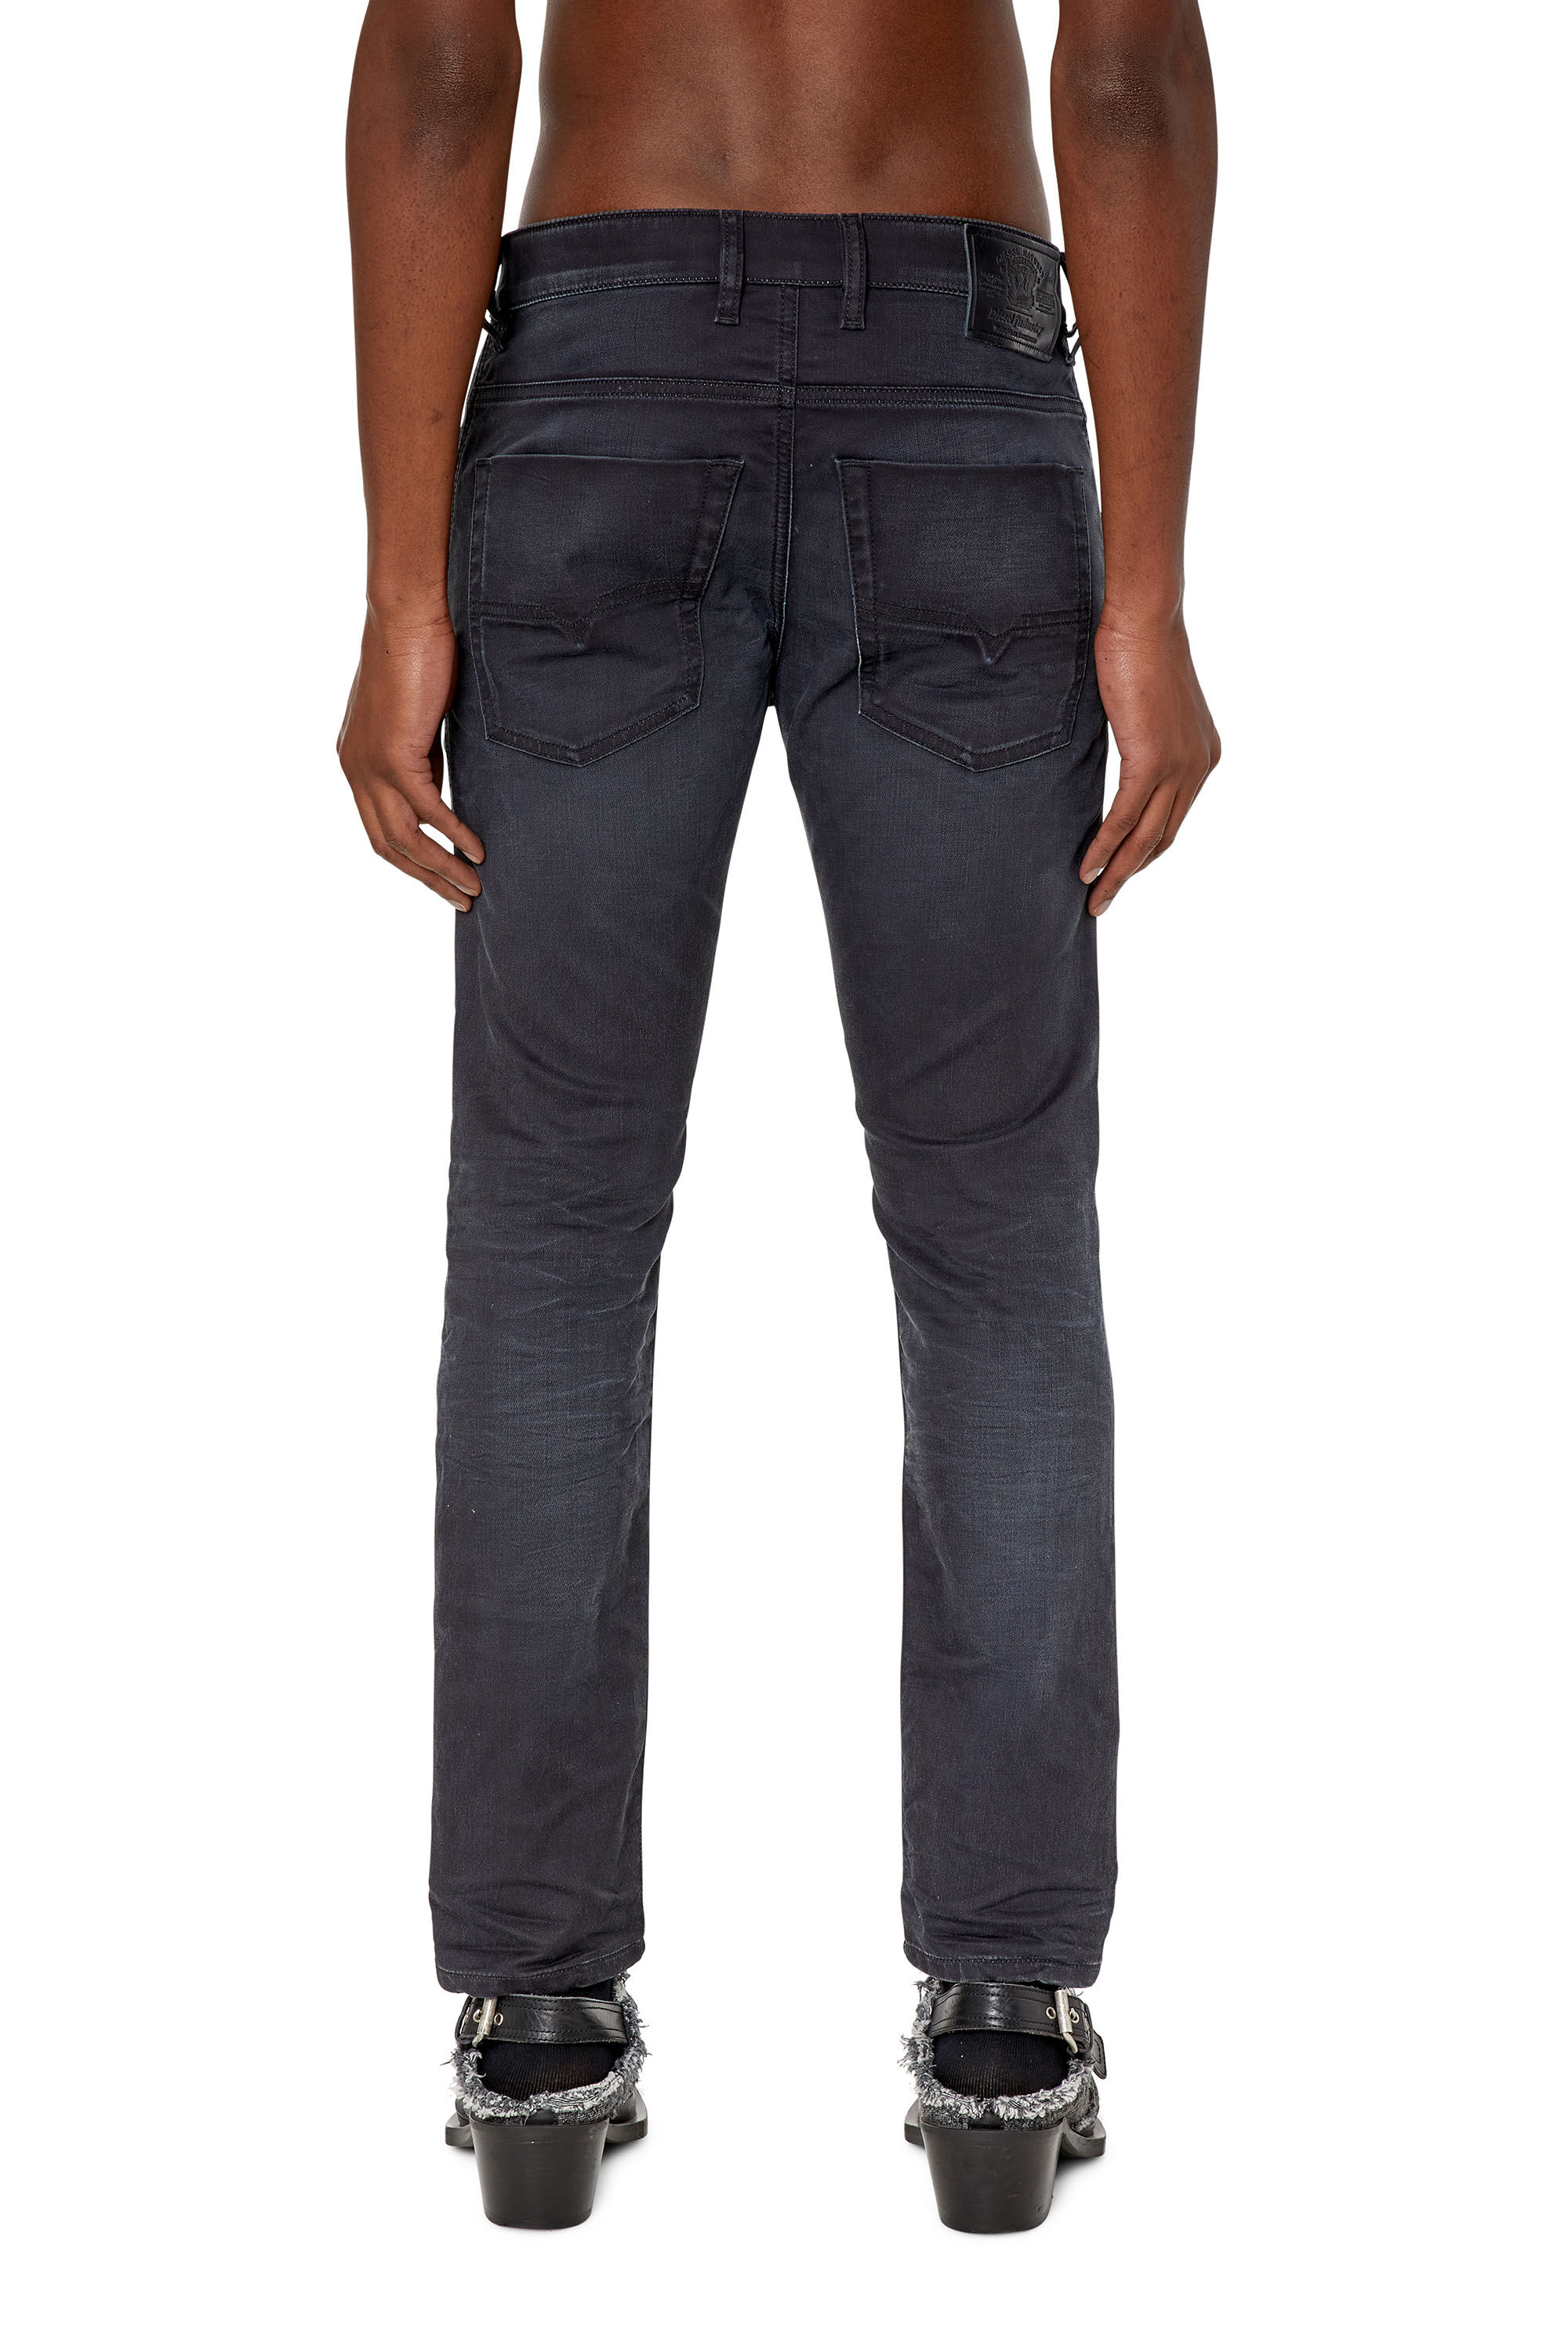 KROOLEY-Y-NE Man: tapered Black/Dark grey Jeans | Diesel